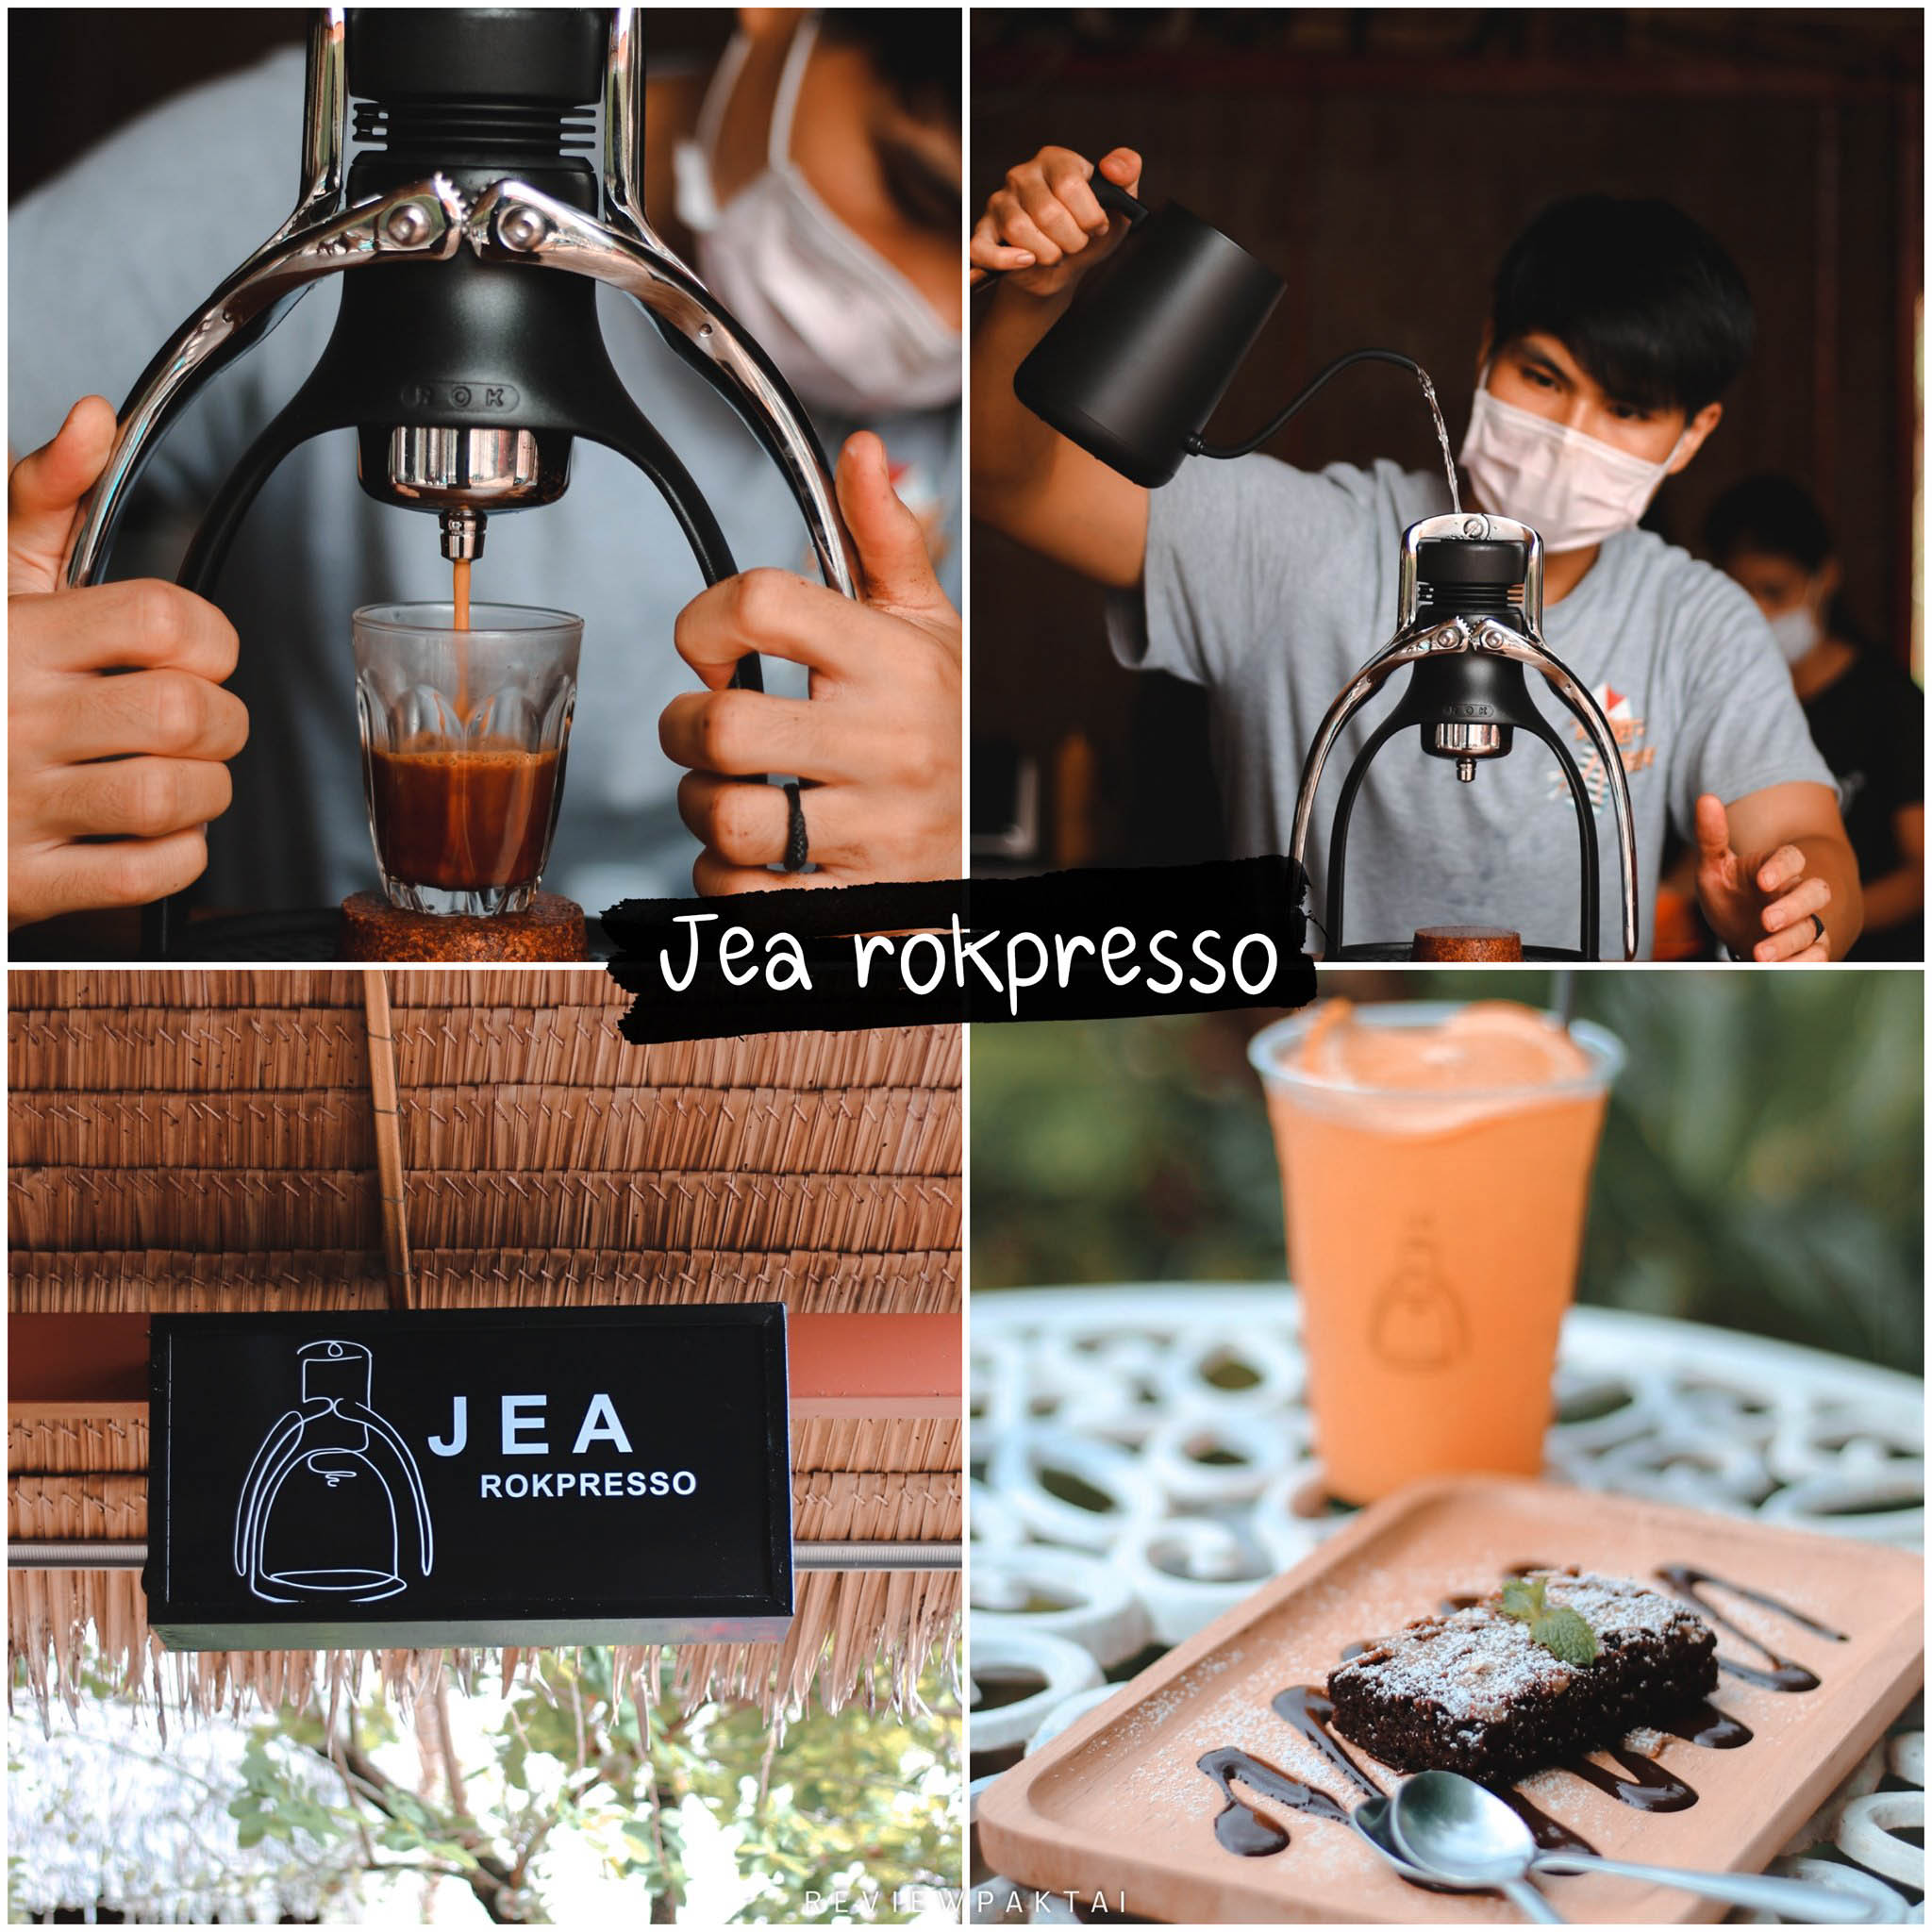 ร้านกาแฟริมน้ำ Jea Rokpresso Bar ใจกลางเมืองภูเก็ตไปเช็คอินเลยเพื่อเติมความสุขให้ตัวเองกัน